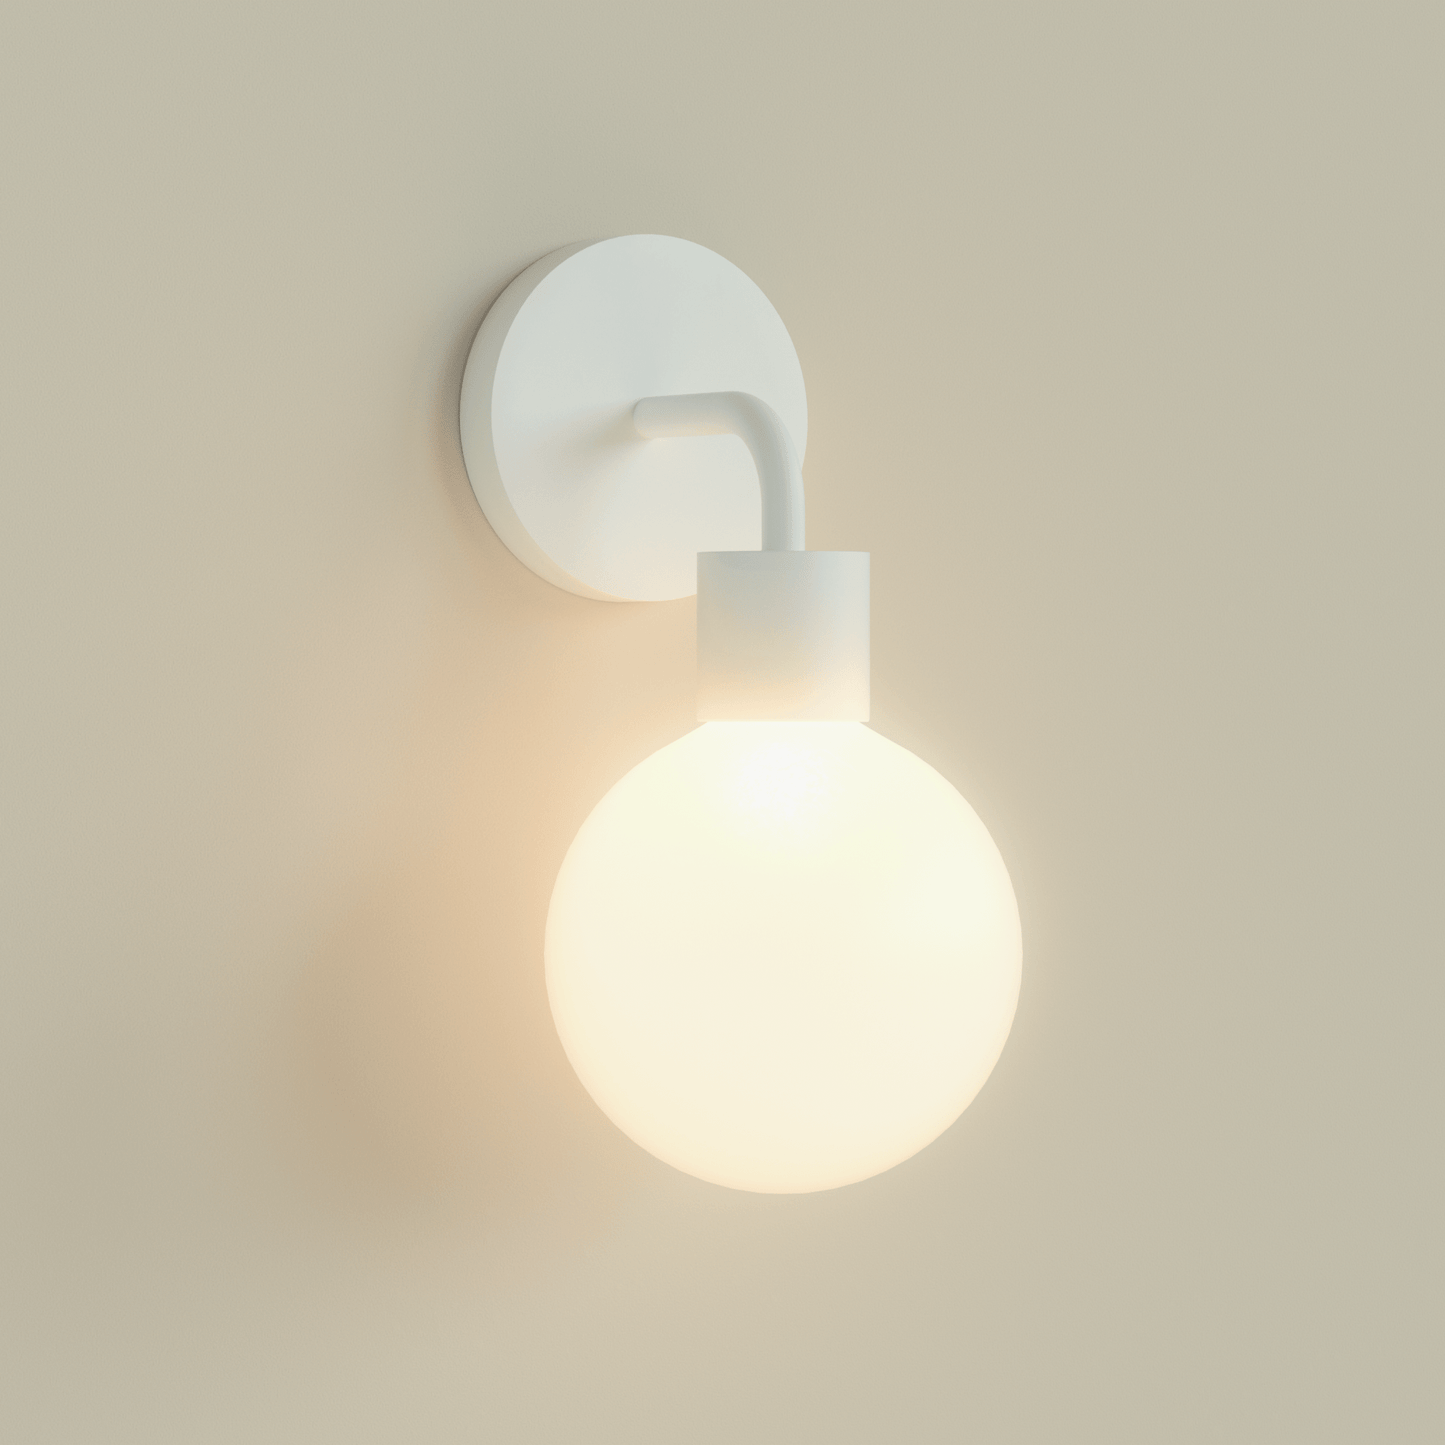 Poplight Wall Light